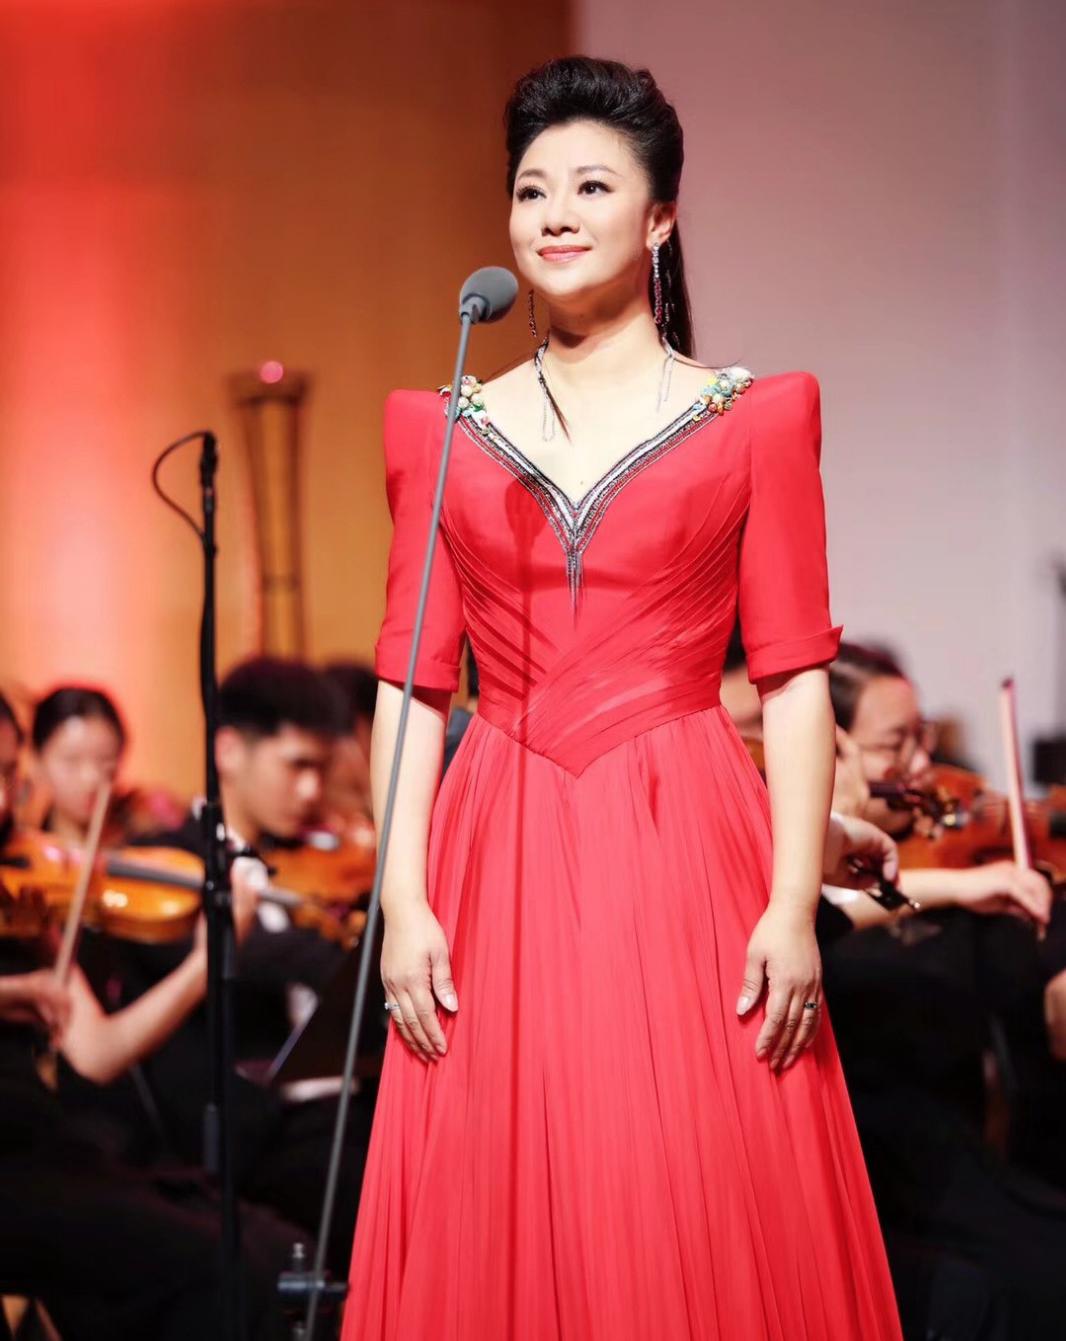 歌唱家王丽达博士毕业音乐会广获赞誉